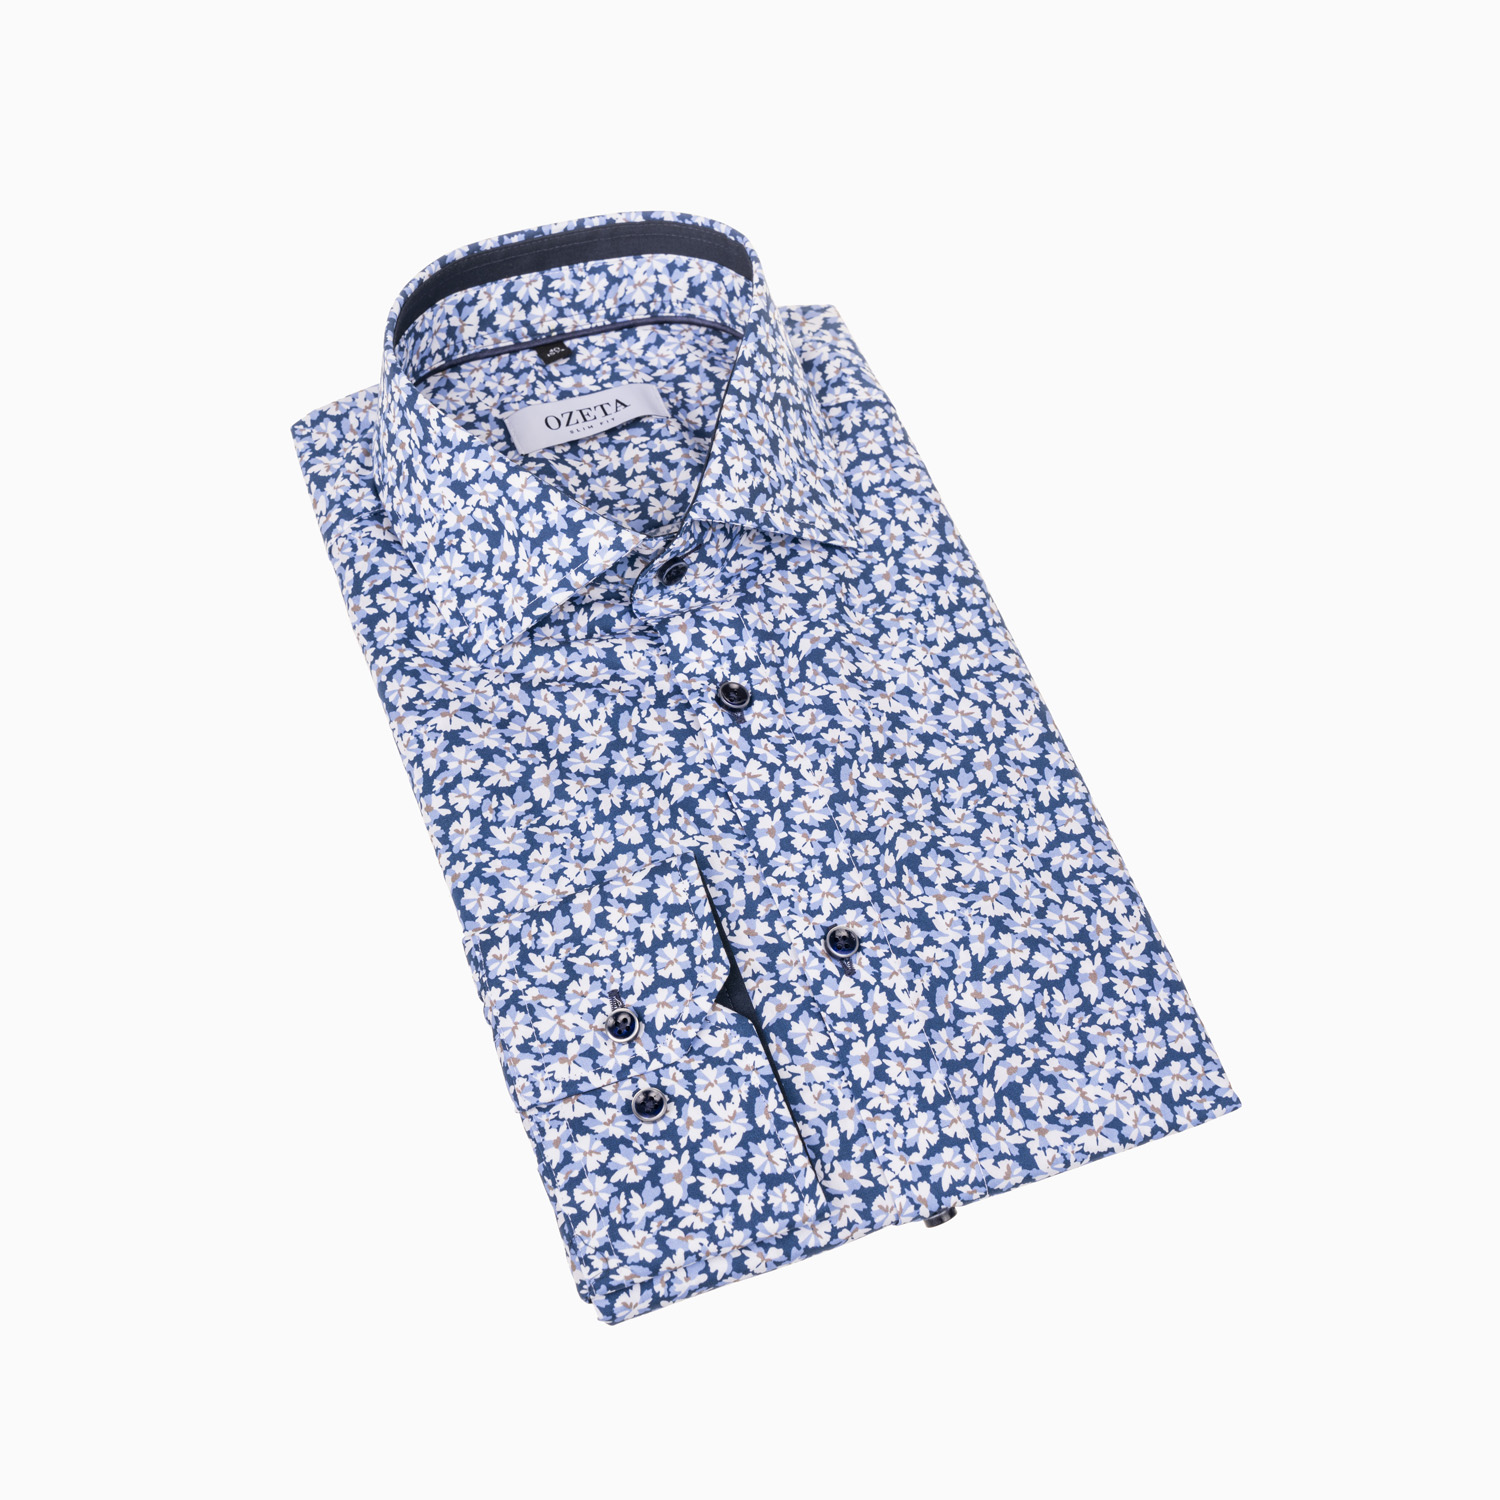 Casual Hemd mit floralem Print in blau - Slim Fit